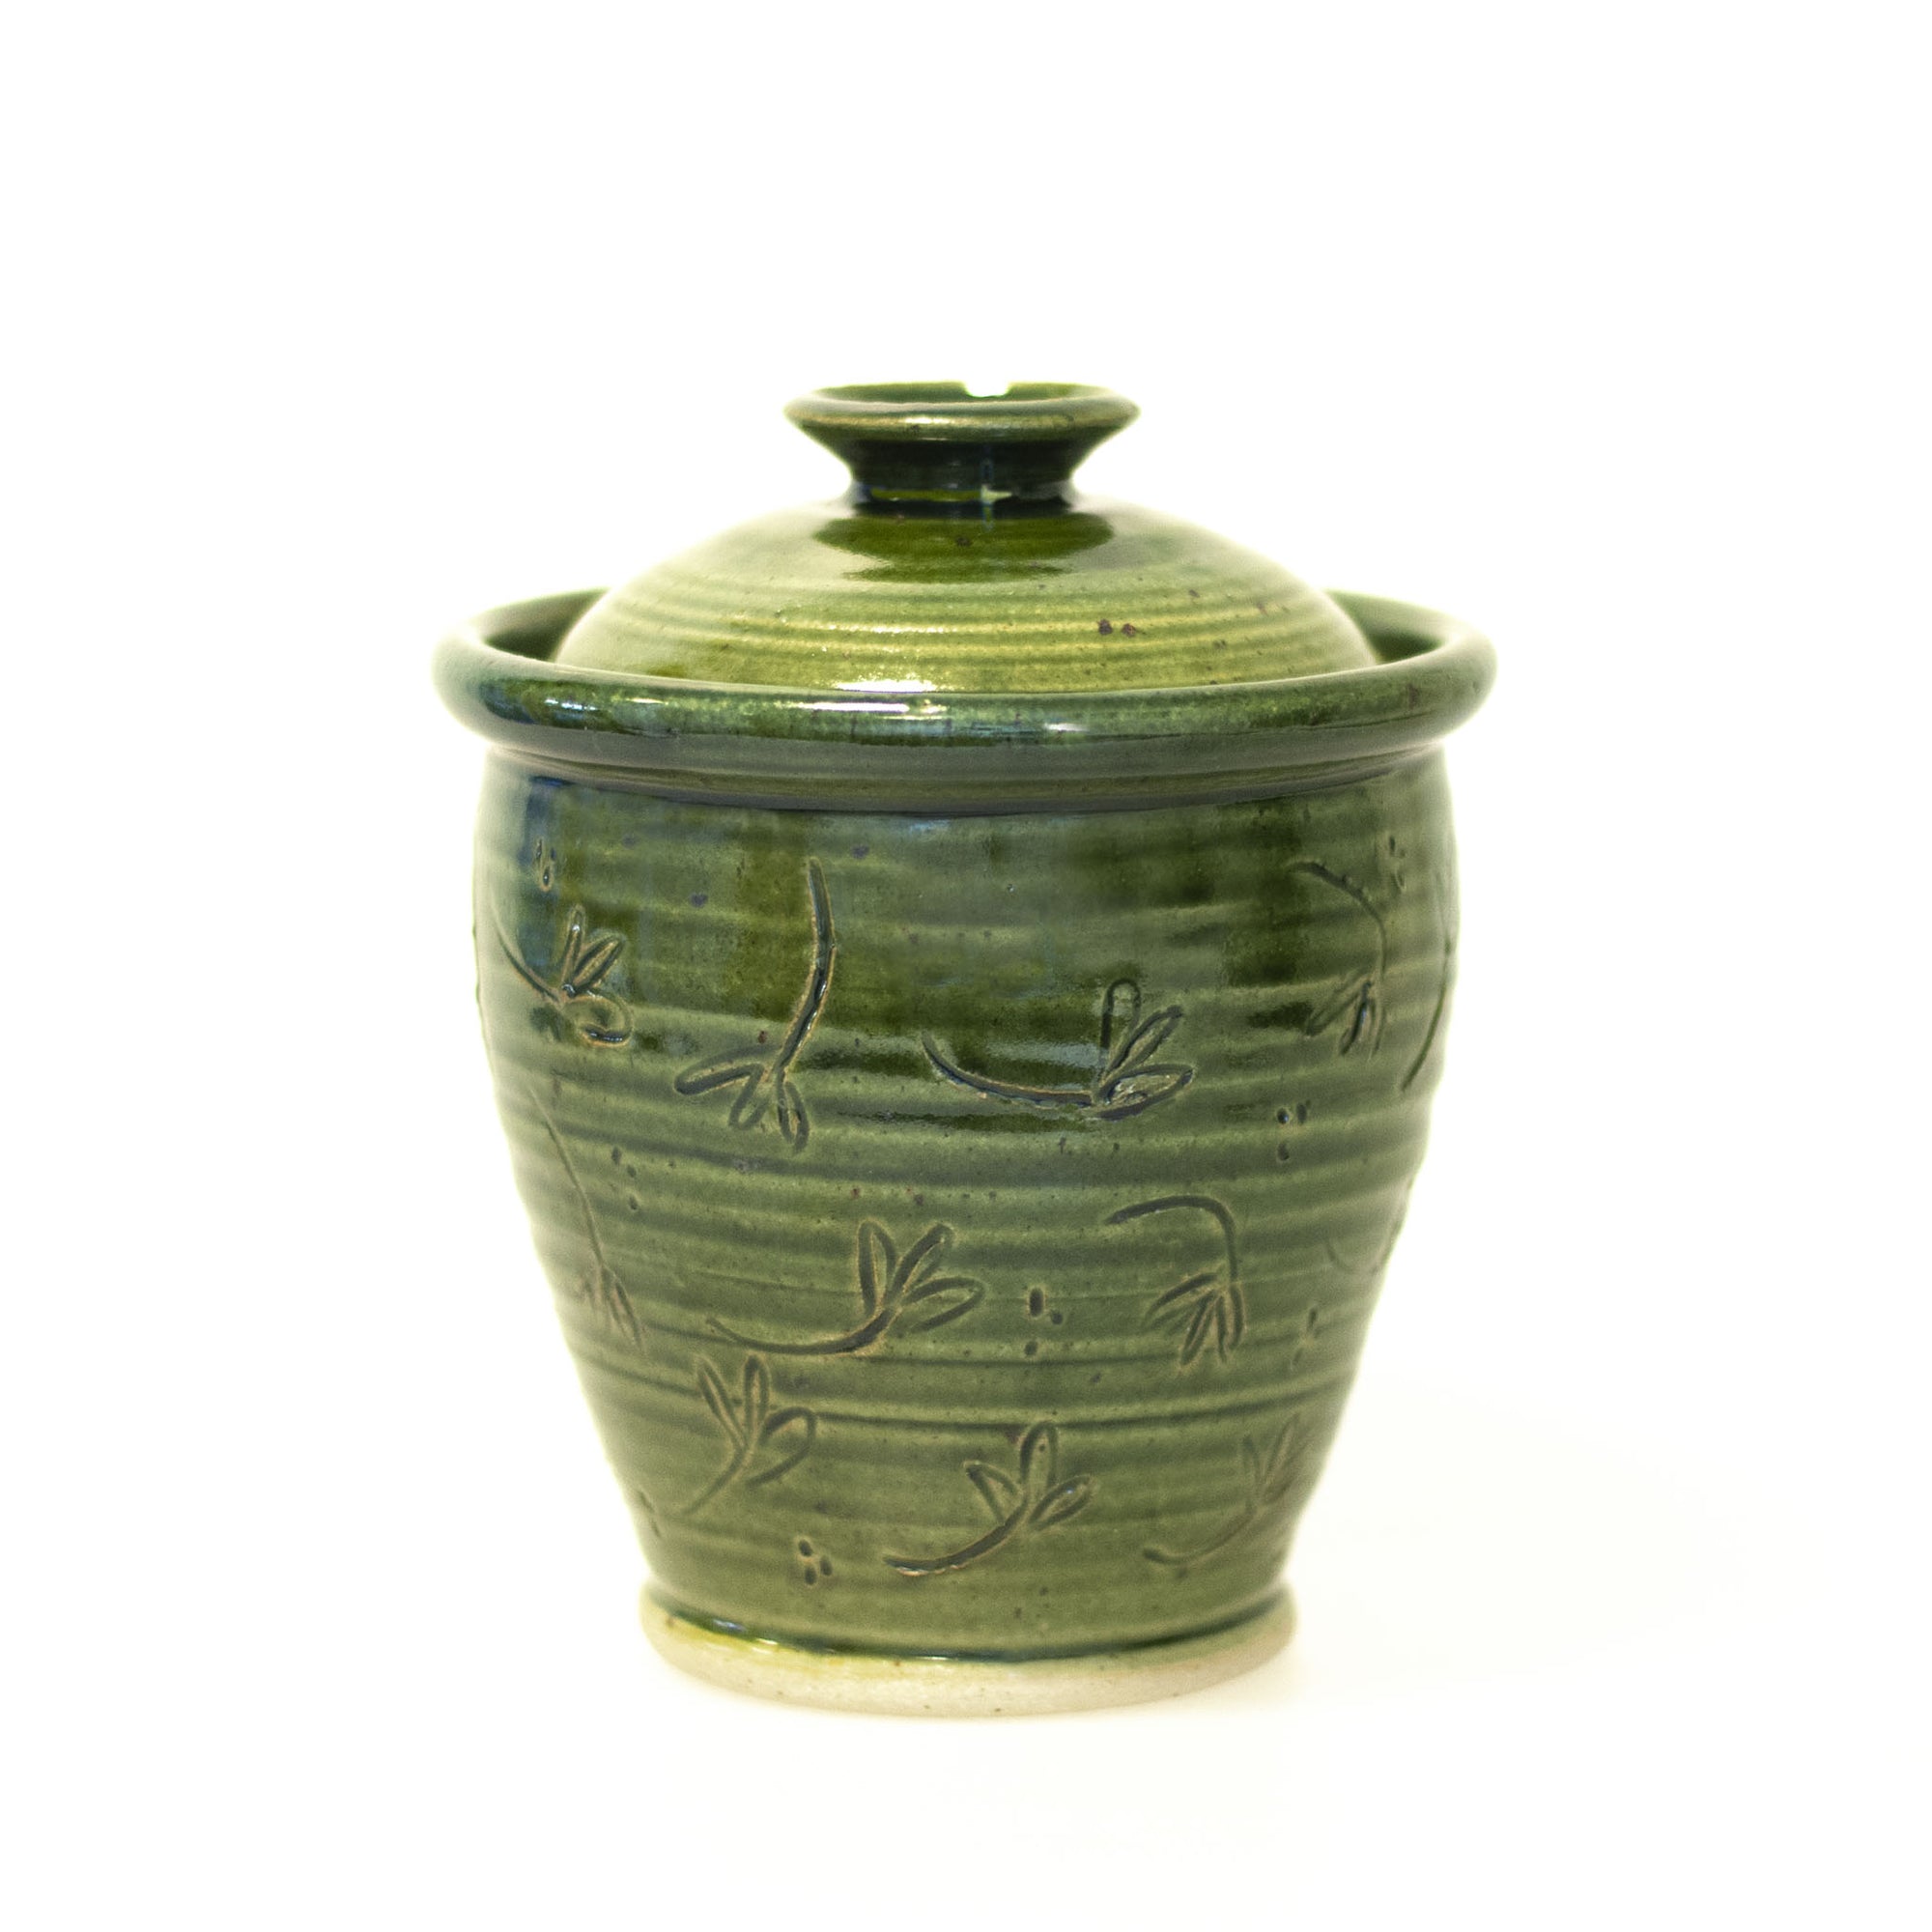 Liv - handdrejad burk med lock i keramik. Grön glasyr